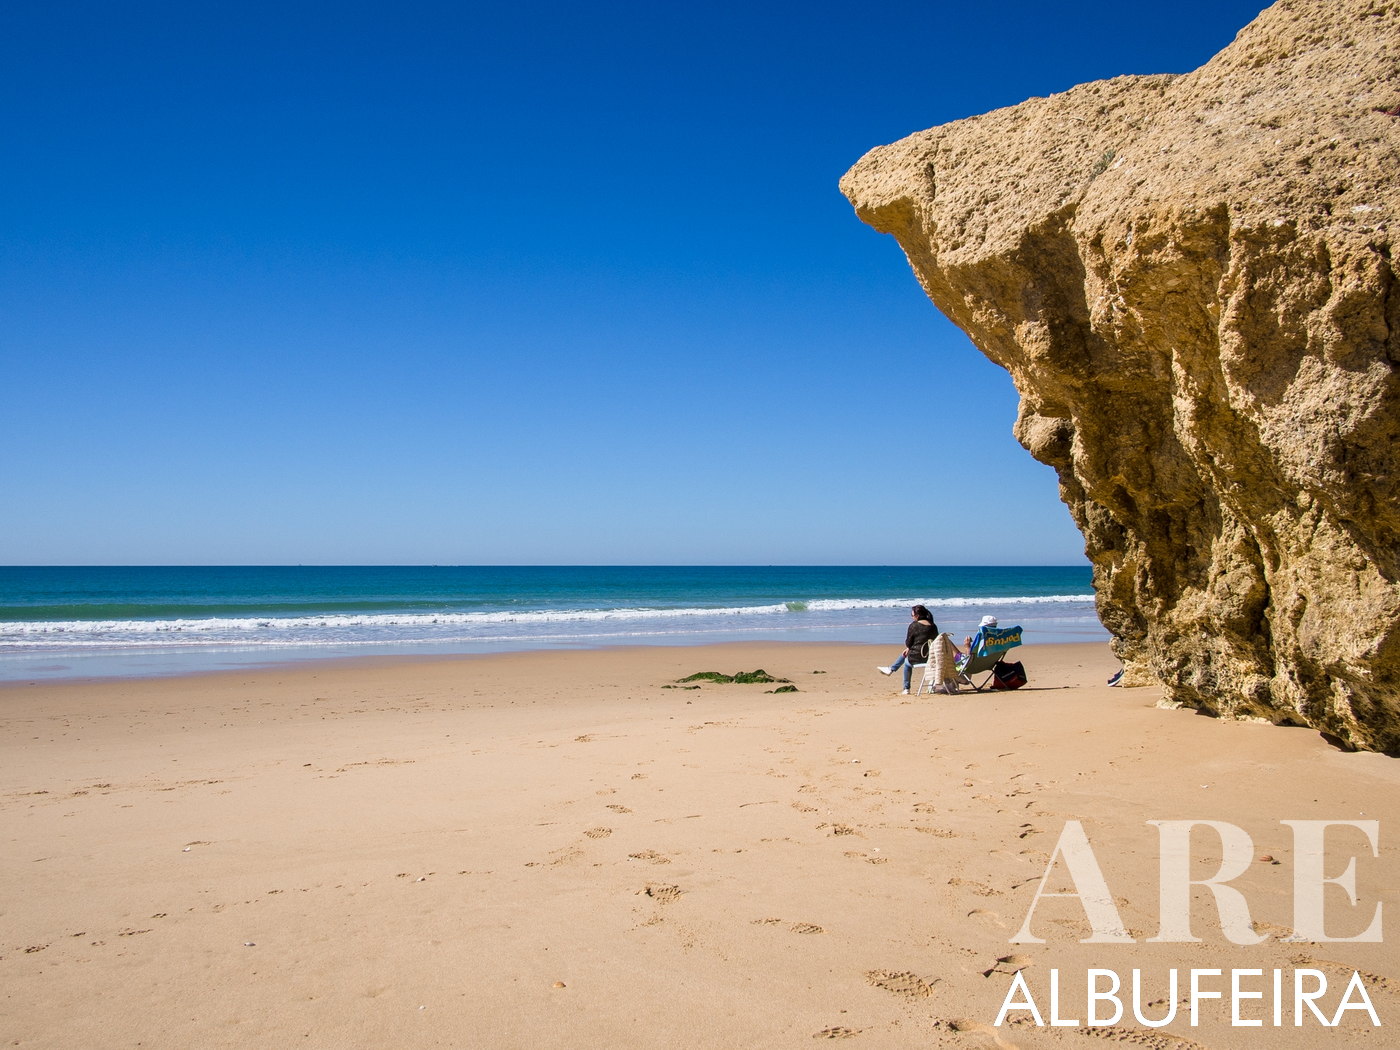 Escena cautivadora en Praia da Galé en marzo. Una imponente formación rocosa de piedra caliza a la derecha complementa perfectamente el cielo azul claro, creando una imagen llamativa.